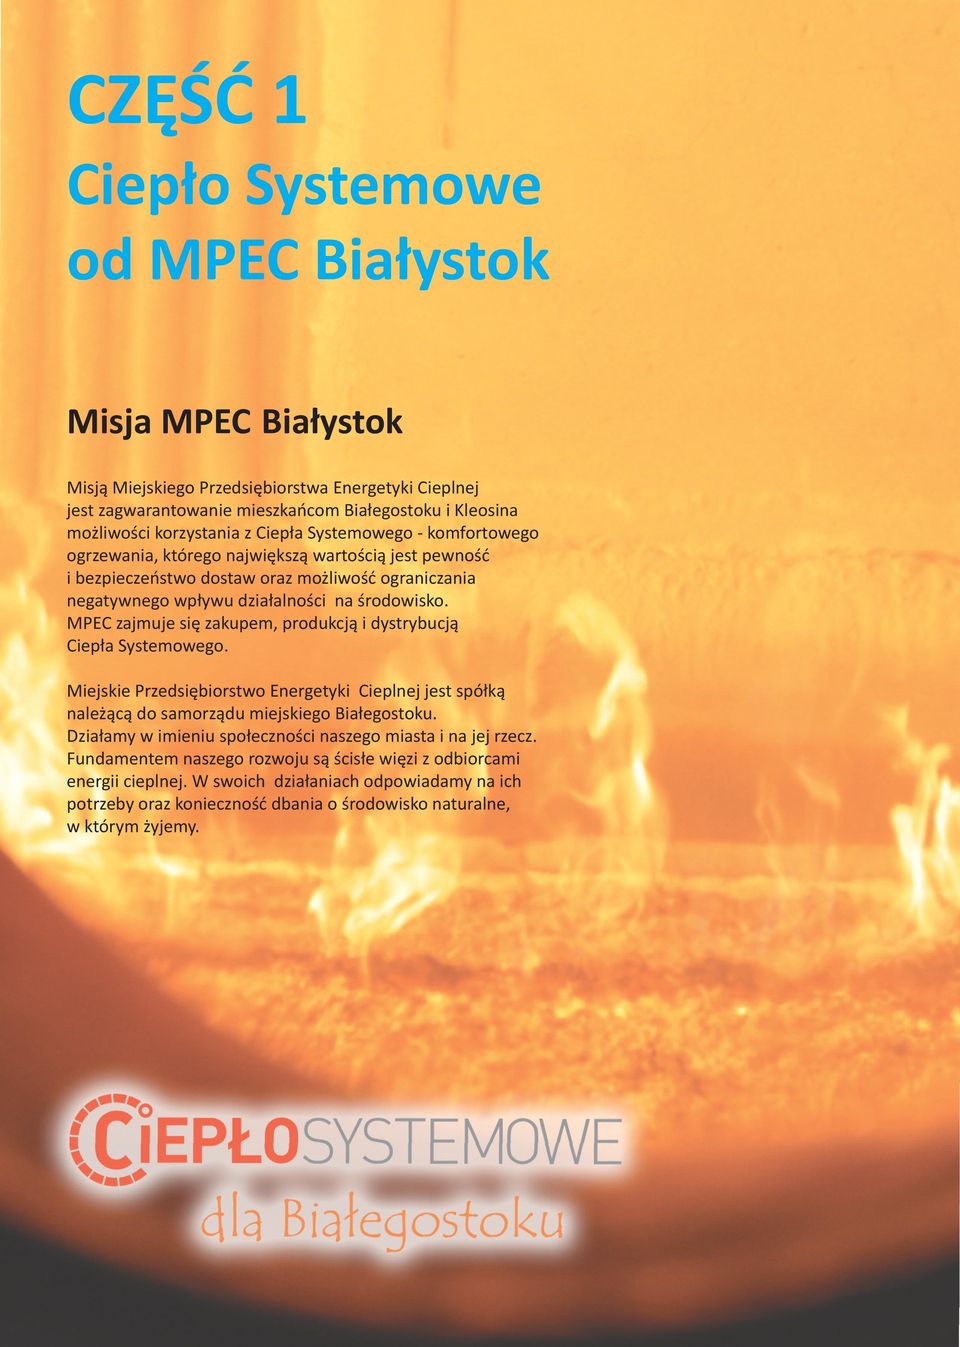 MPEC zajmuje się zakupem, produkcją i dystrybucją Ciepła Systemowego. Miejskie Przedsiębiorstwo Energetyki Cieplnej jest spółką należącą do samorządu miejskiego Białegostoku.